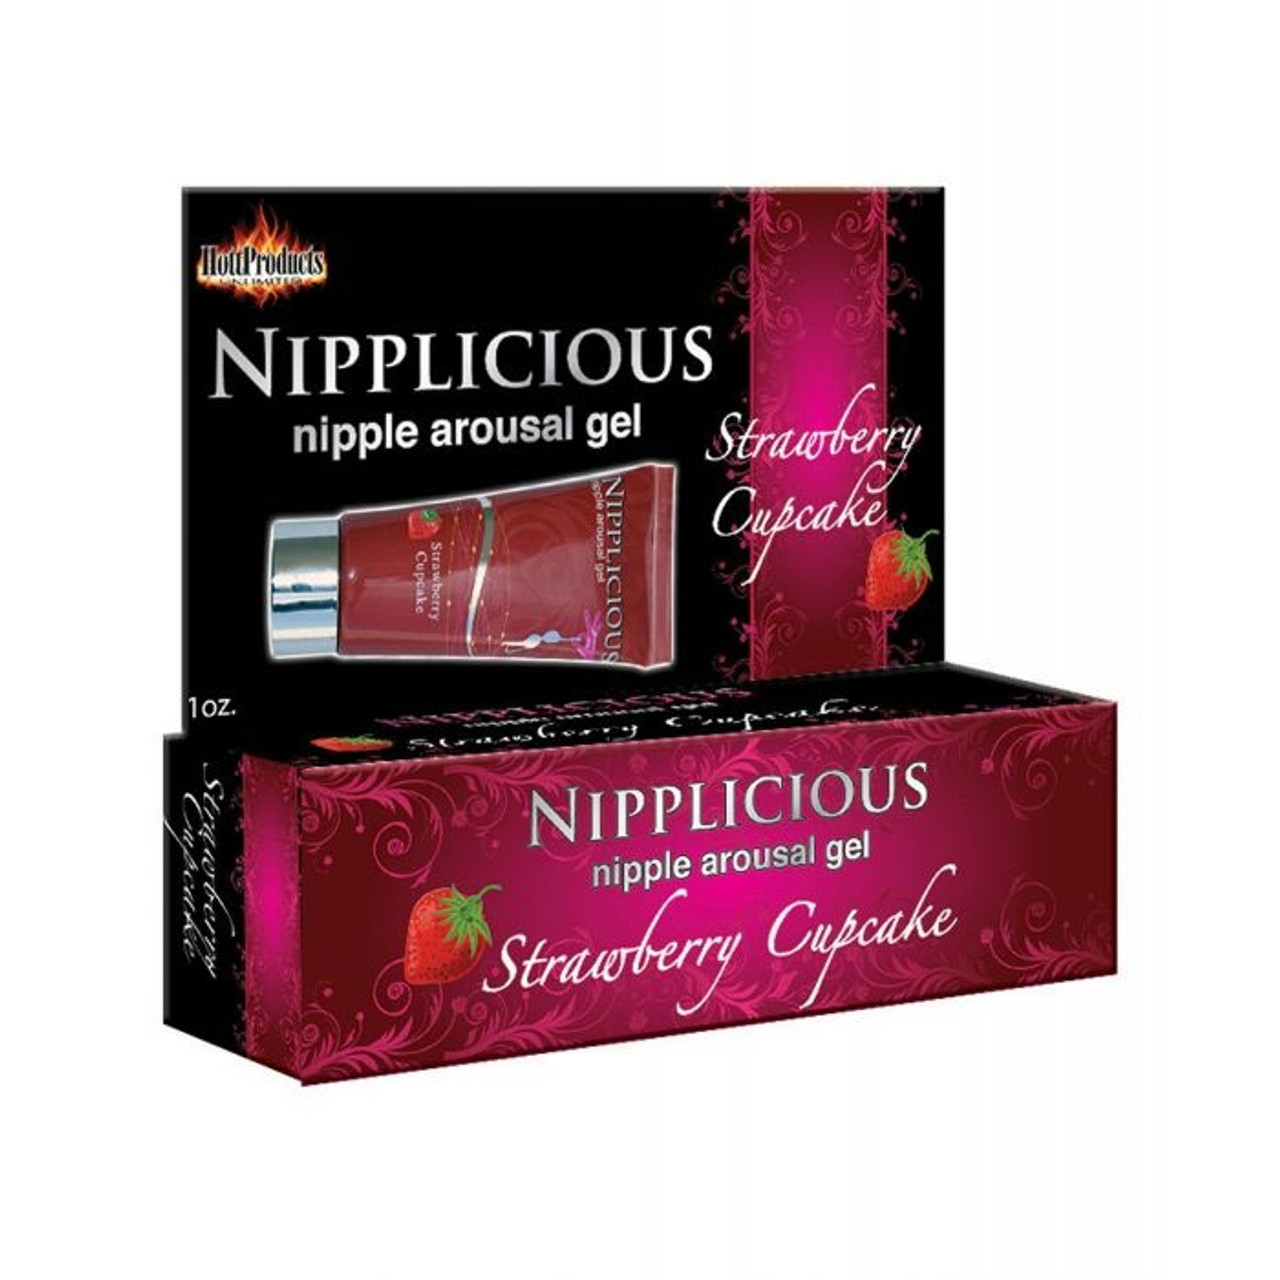 Nipplicious Nipple Arousal Gel 1 oz - Strawberry Shortcake